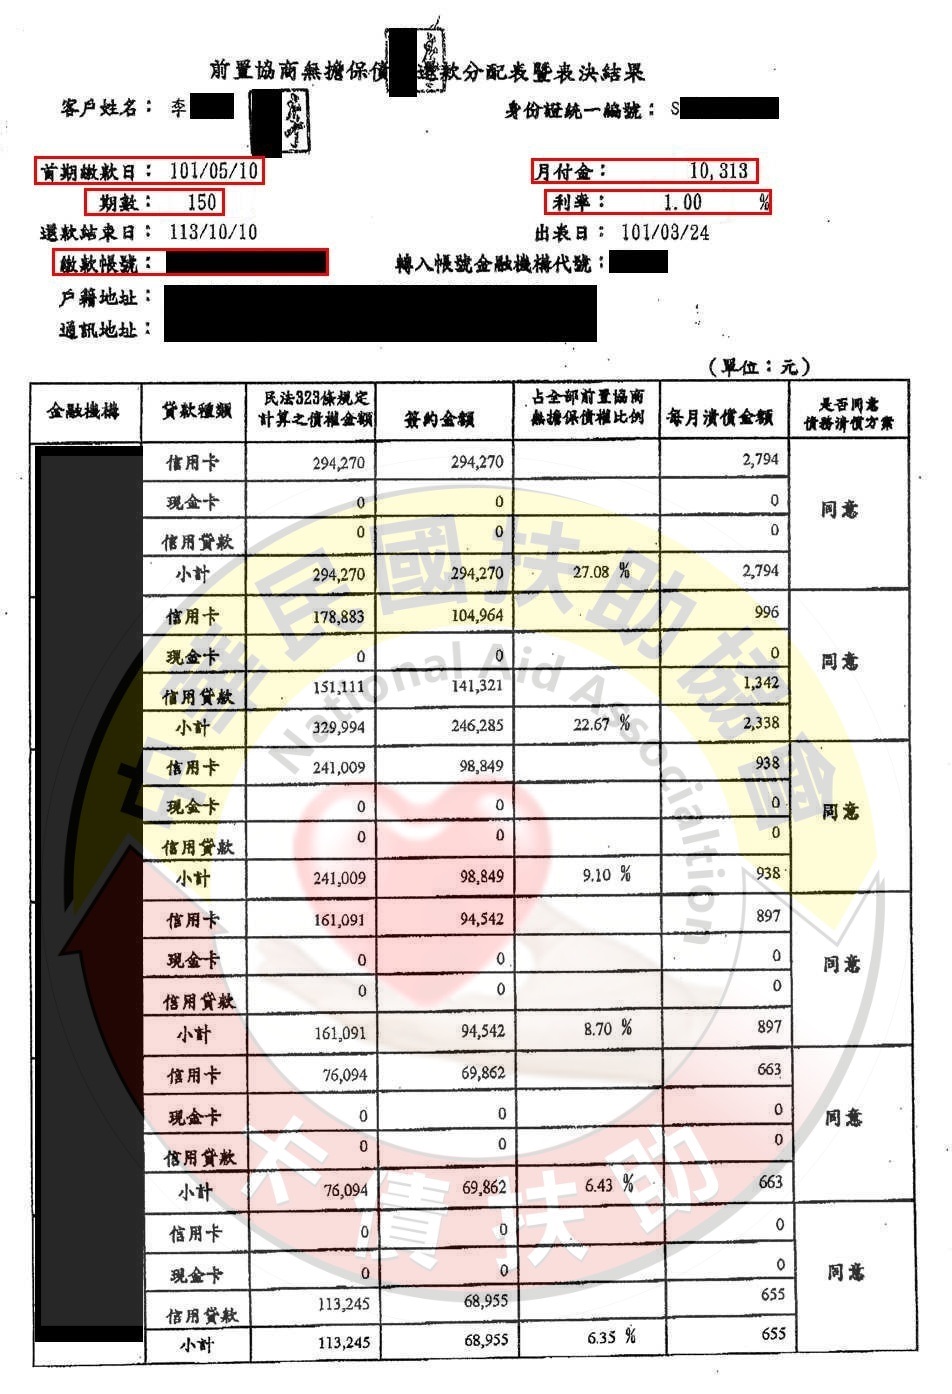 苗栗李先生-協商成功依150期1%月付10,313元 